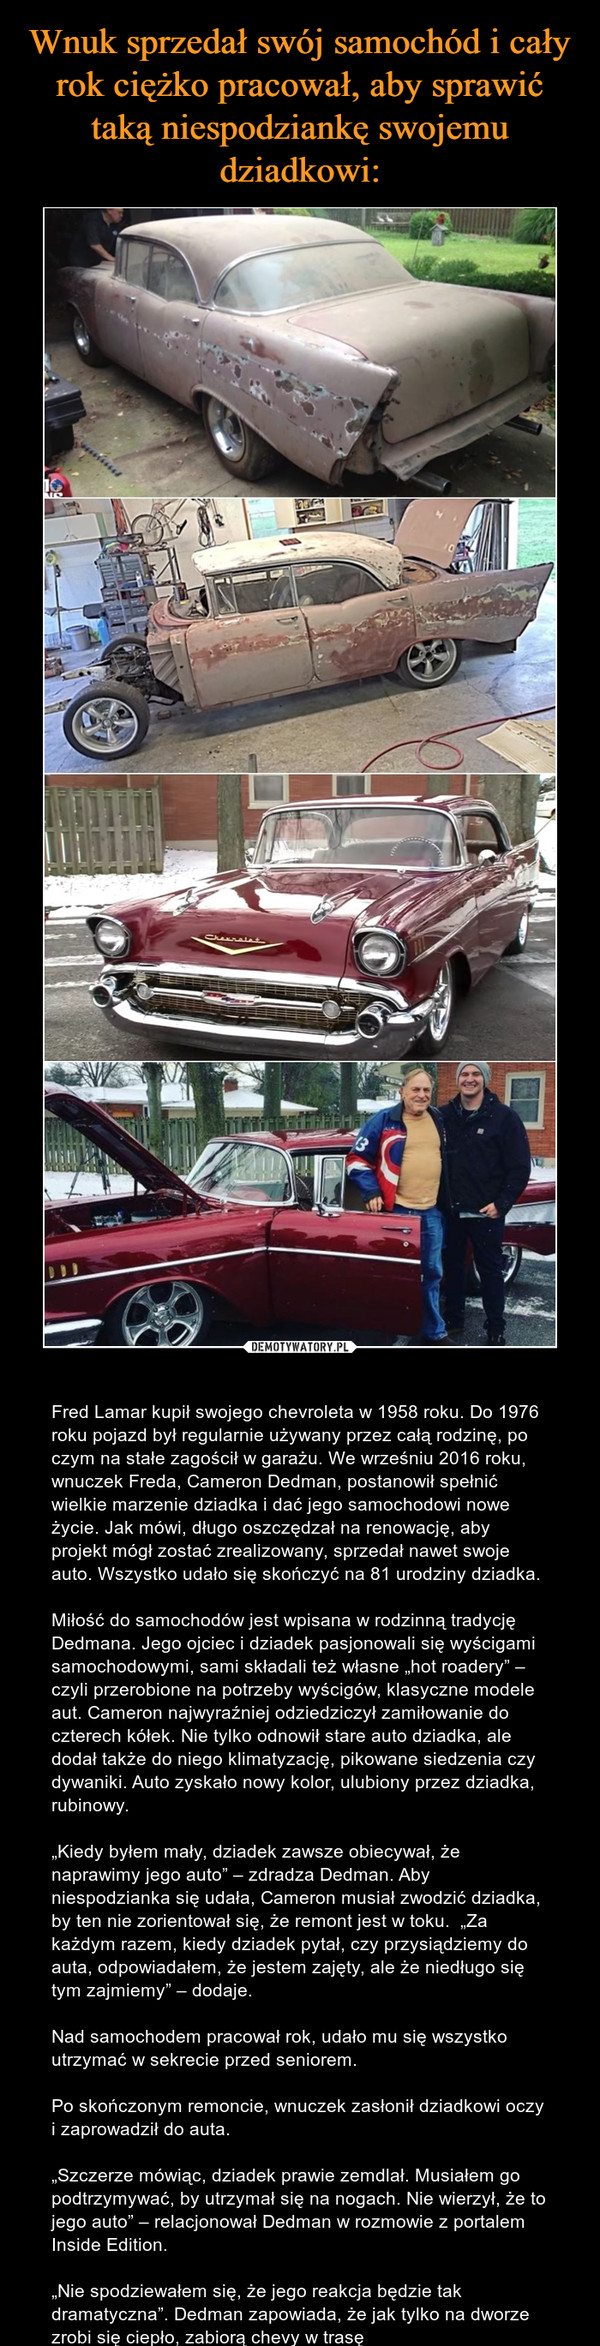  – Fred Lamar kupił swojego chevroleta w 1958 roku. Do 1976 roku pojazd był regularnie używany przez całą rodzinę, po czym na stałe zagościł w garażu. We wrześniu 2016 roku, wnuczek Freda, Cameron Dedman, postanowił spełnić wielkie marzenie dziadka i dać jego samochodowi nowe życie. Jak mówi, długo oszczędzał na renowację, aby projekt mógł zostać zrealizowany, sprzedał nawet swoje auto. Wszystko udało się skończyć na 81 urodziny dziadka.Miłość do samochodów jest wpisana w rodzinną tradycję Dedmana. Jego ojciec i dziadek pasjonowali się wyścigami samochodowymi, sami składali też własne „hot roadery” – czyli przerobione na potrzeby wyścigów, klasyczne modele aut. Cameron najwyraźniej odziedziczył zamiłowanie do czterech kółek. Nie tylko odnowił stare auto dziadka, ale dodał także do niego klimatyzację, pikowane siedzenia czy dywaniki. Auto zyskało nowy kolor, ulubiony przez dziadka, rubinowy.„Kiedy byłem mały, dziadek zawsze obiecywał, że naprawimy jego auto” – zdradza Dedman. Aby niespodzianka się udała, Cameron musiał zwodzić dziadka, by ten nie zorientował się, że remont jest w toku.  „Za każdym razem, kiedy dziadek pytał, czy przysiądziemy do auta, odpowiadałem, że jestem zajęty, ale że niedługo się tym zajmiemy” – dodaje.Nad samochodem pracował rok, udało mu się wszystko utrzymać w sekrecie przed seniorem.Po skończonym remoncie, wnuczek zasłonił dziadkowi oczy i zaprowadził do auta.„Szczerze mówiąc, dziadek prawie zemdlał. Musiałem go podtrzymywać, by utrzymał się na nogach. Nie wierzył, że to jego auto” – relacjonował Dedman w rozmowie z portalem Inside Edition.„Nie spodziewałem się, że jego reakcja będzie tak dramatyczna”. Dedman zapowiada, że jak tylko na dworze zrobi się ciepło, zabiorą chevy w trasę 